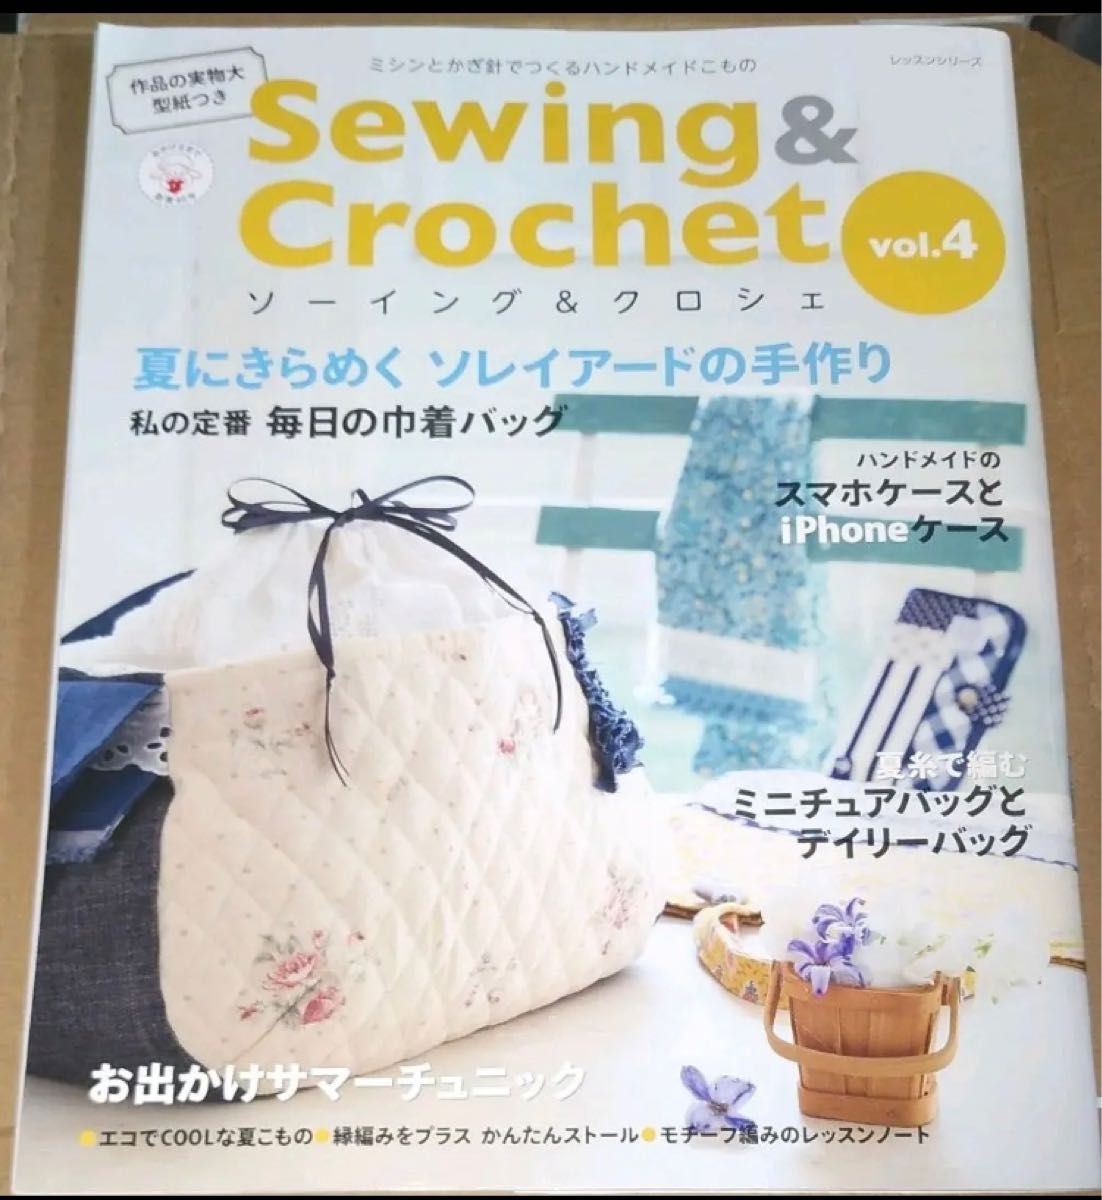 ソーイング&クロシェ = Sewing & Crochet : ミシンとかぎ針